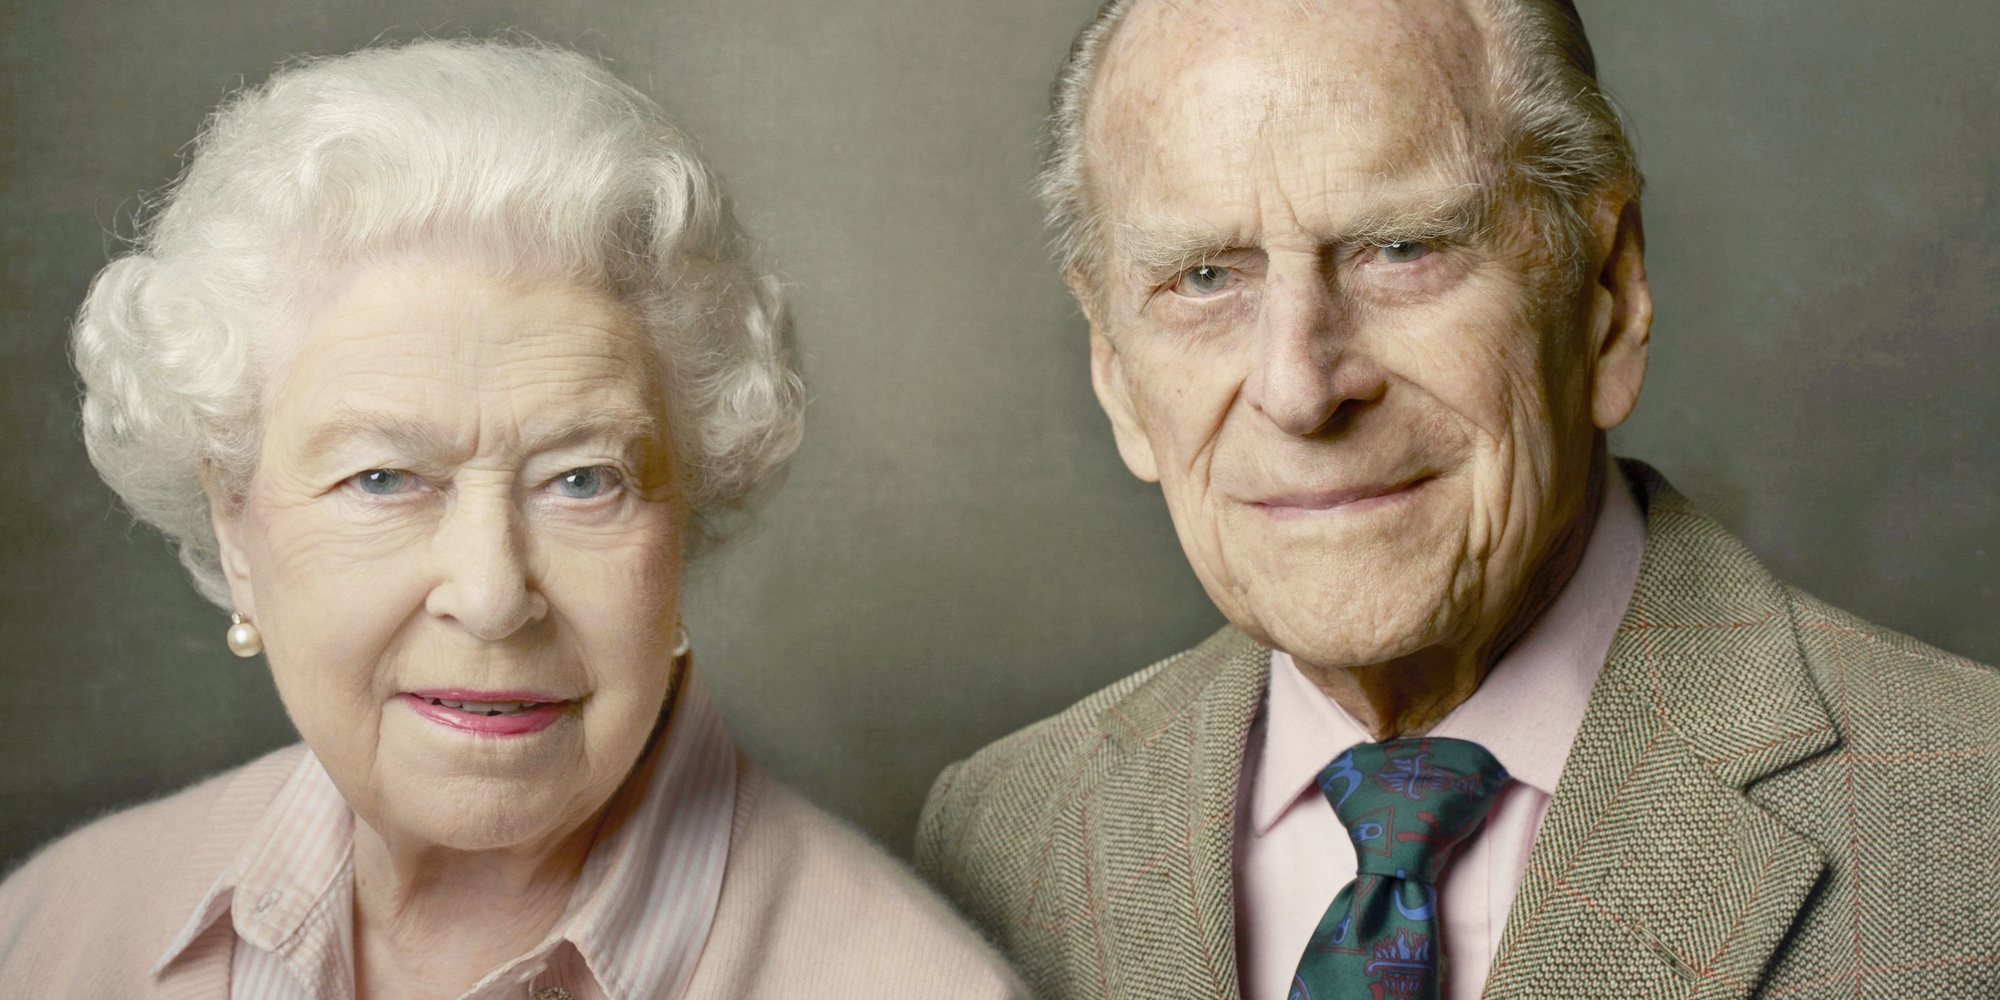 La Reina Isabel y el Duque de Edimburgo ponen fecha a su separación